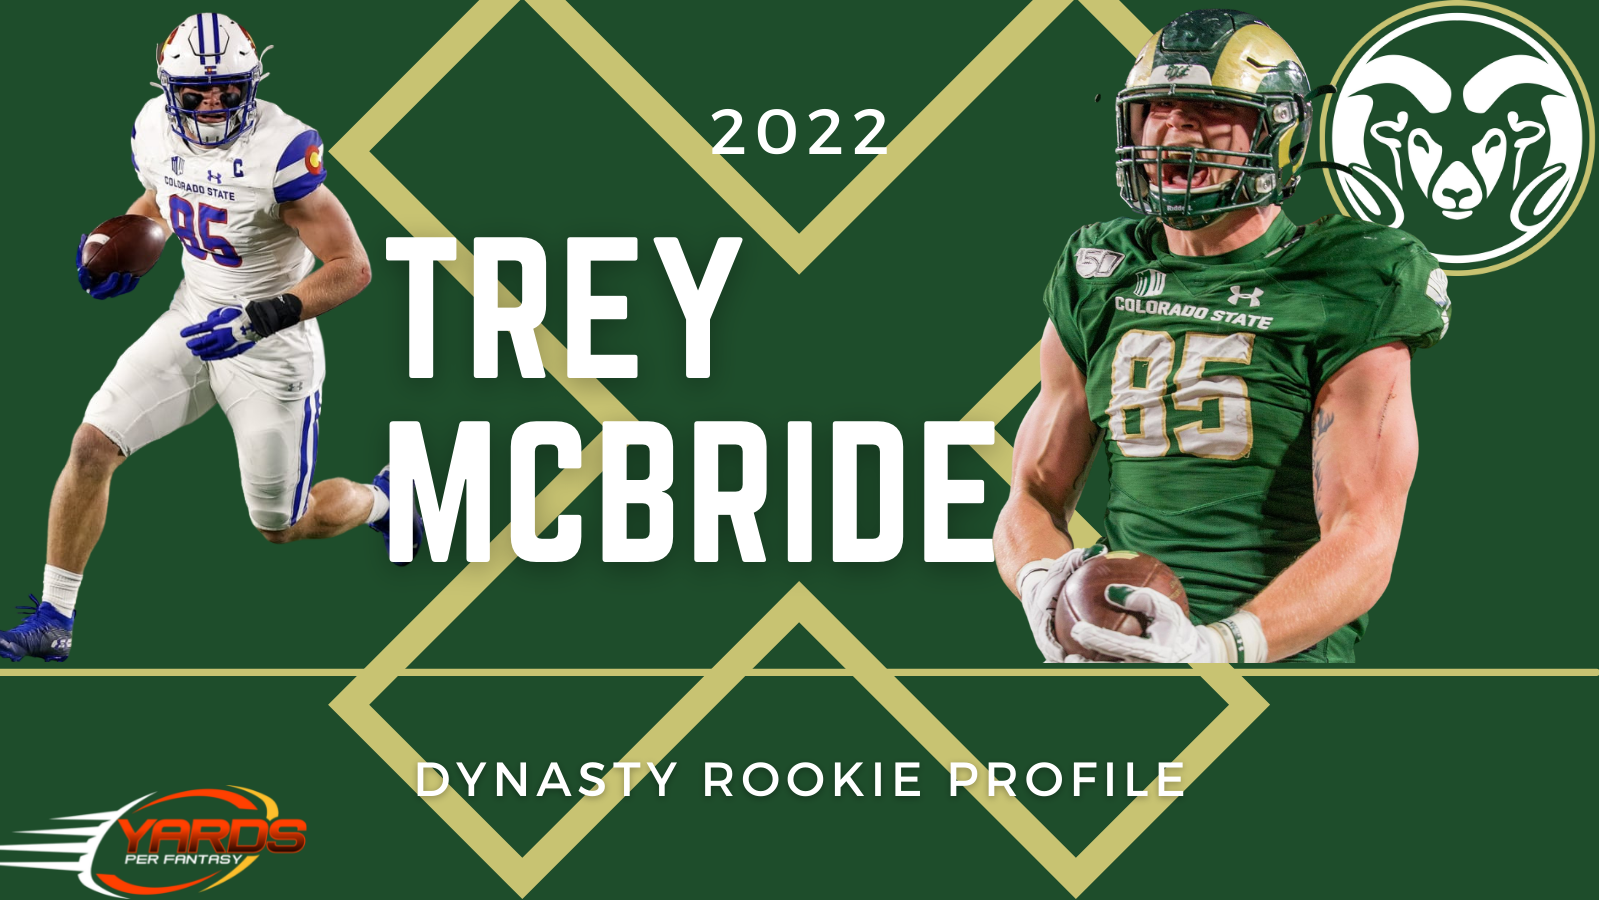 Trey McBride 2022 Dynasty Rookie Profile Yards Per Fantasy